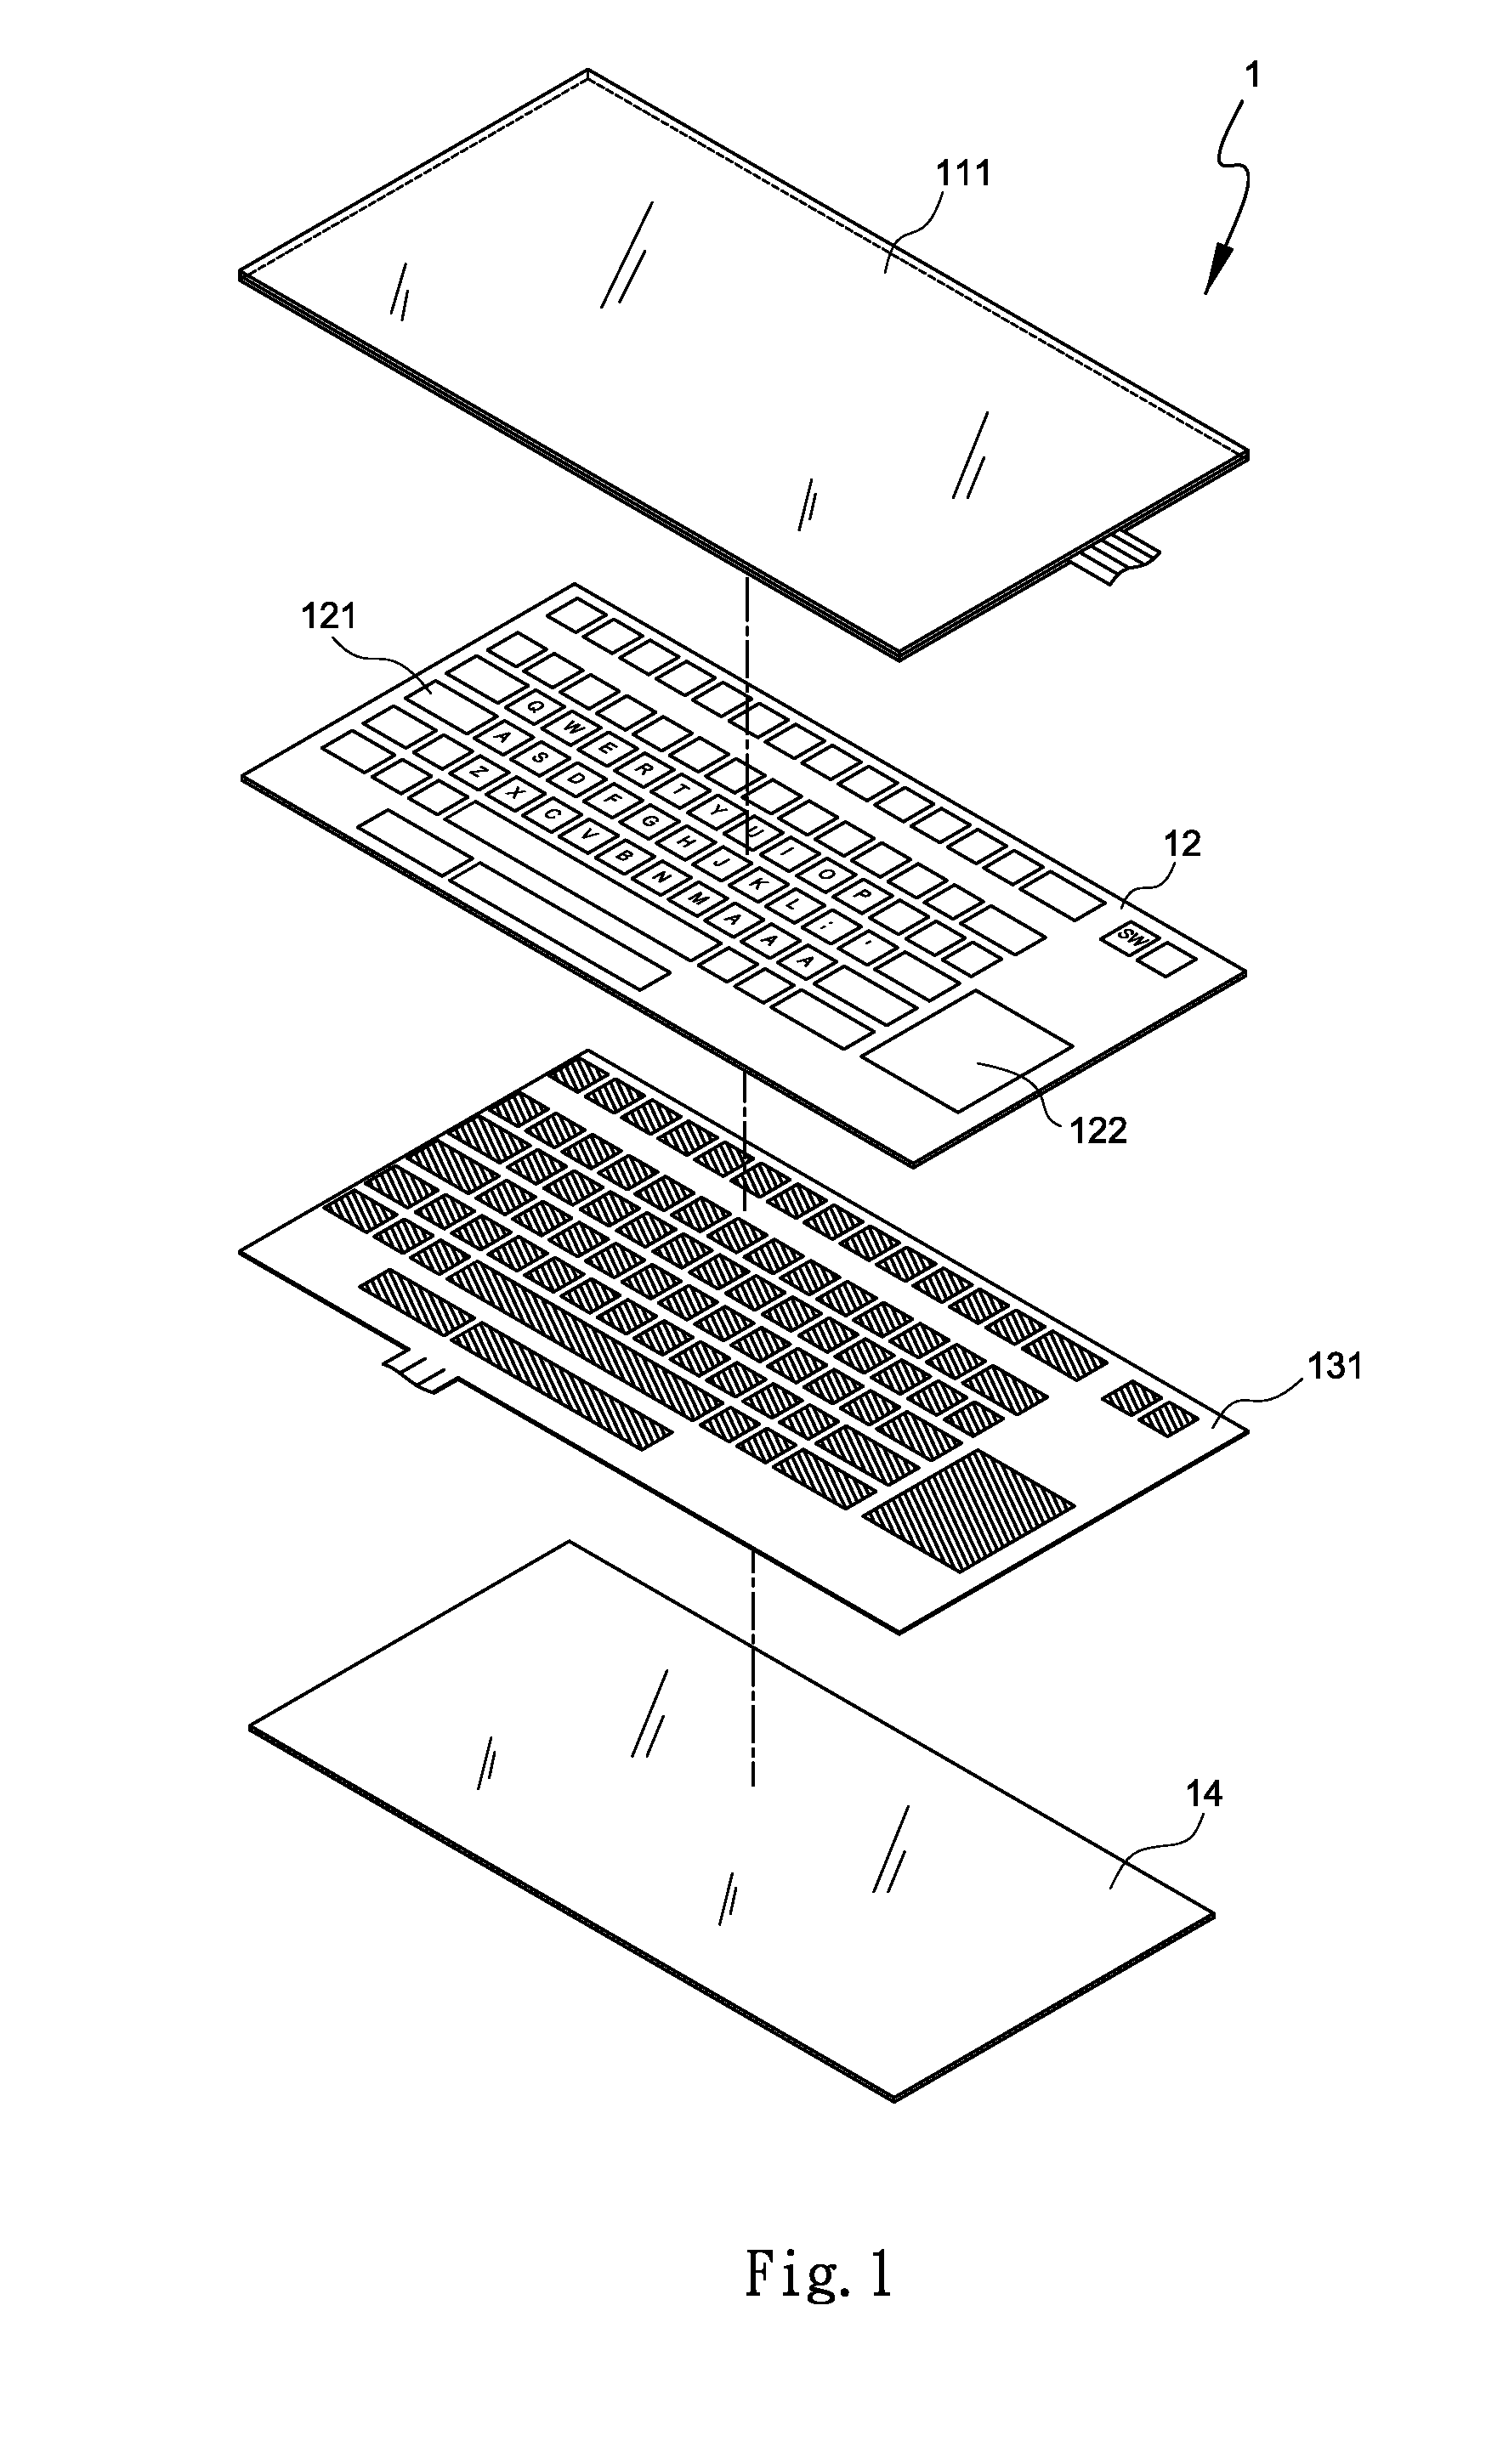 Illuminated computer input device